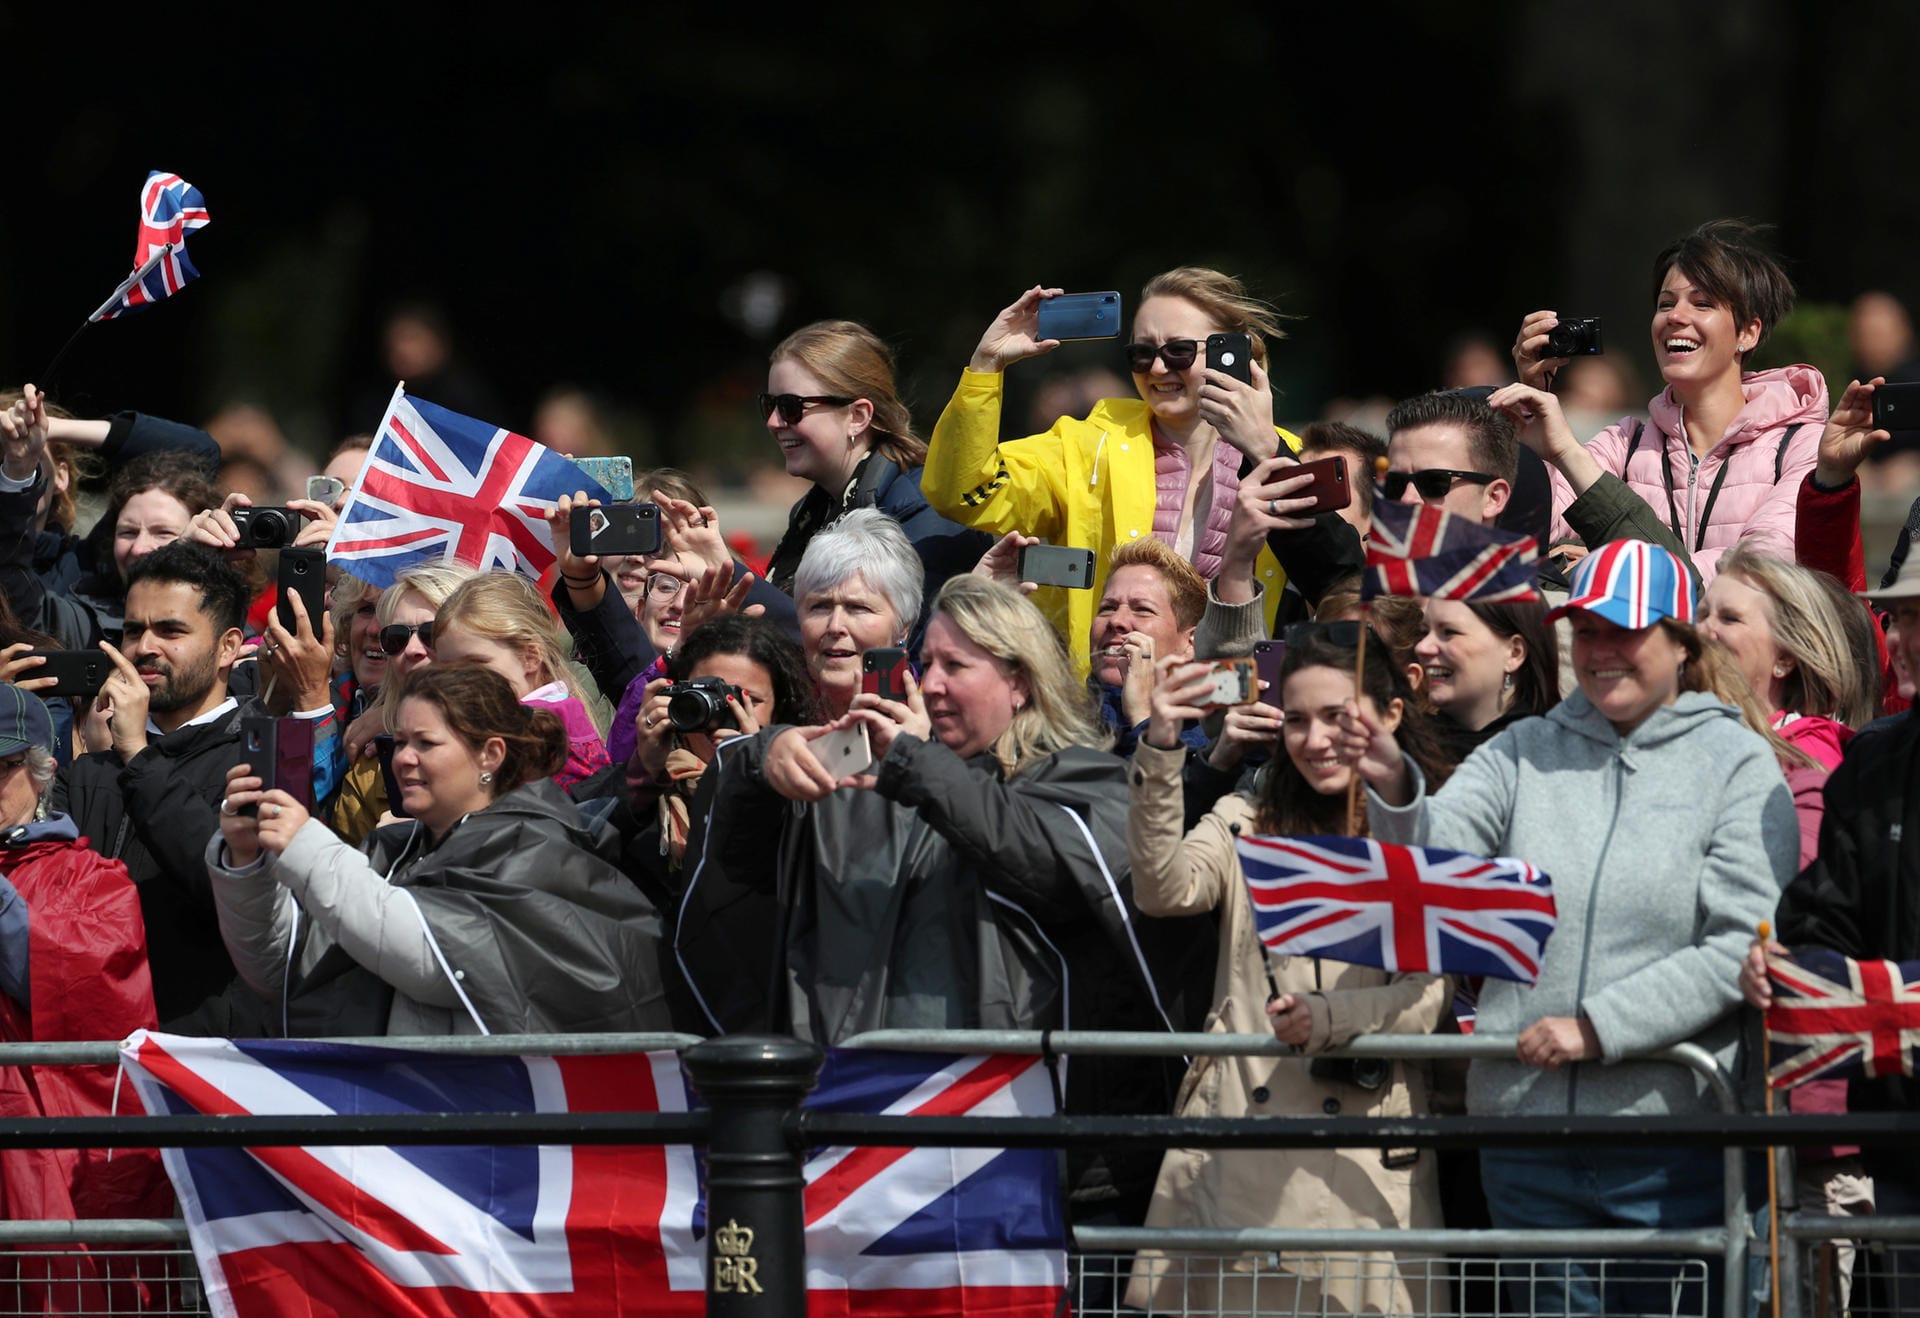 Zahlreiche Fans des britischen Königshauses lassen sich das Spektakel nicht entgehen.